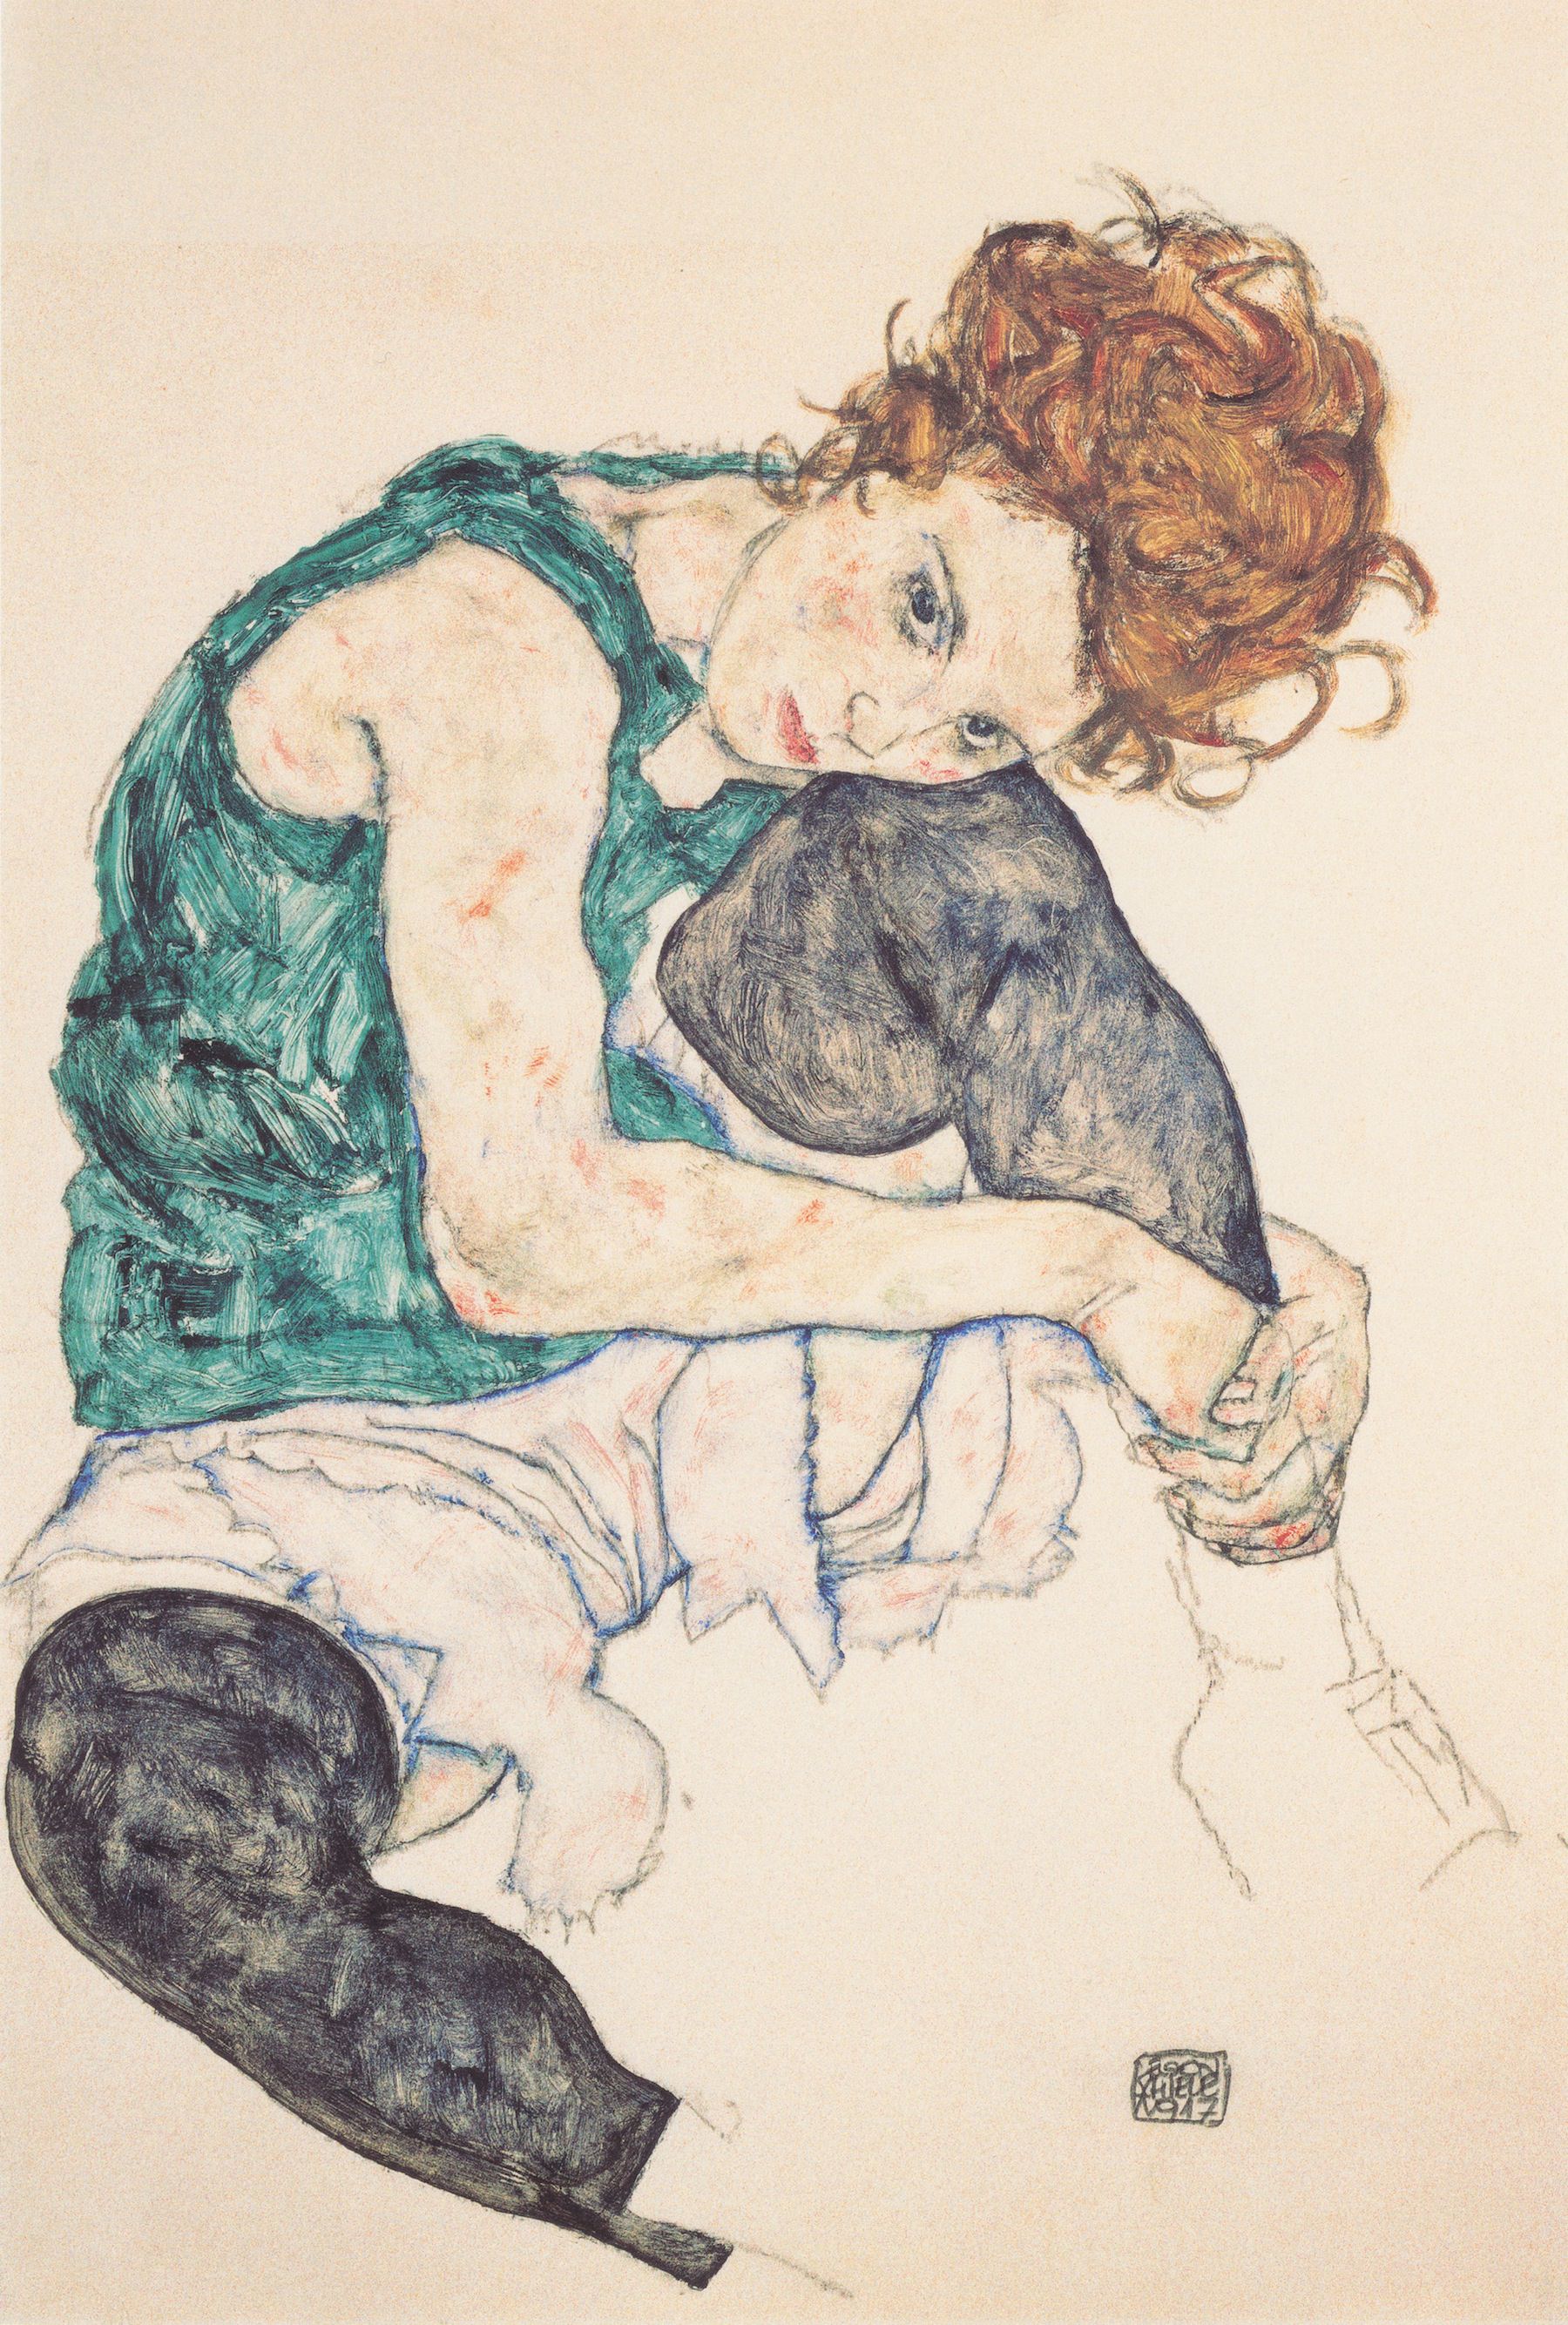 Femme assise genou plié by Egon Schiele - 1917 - - 